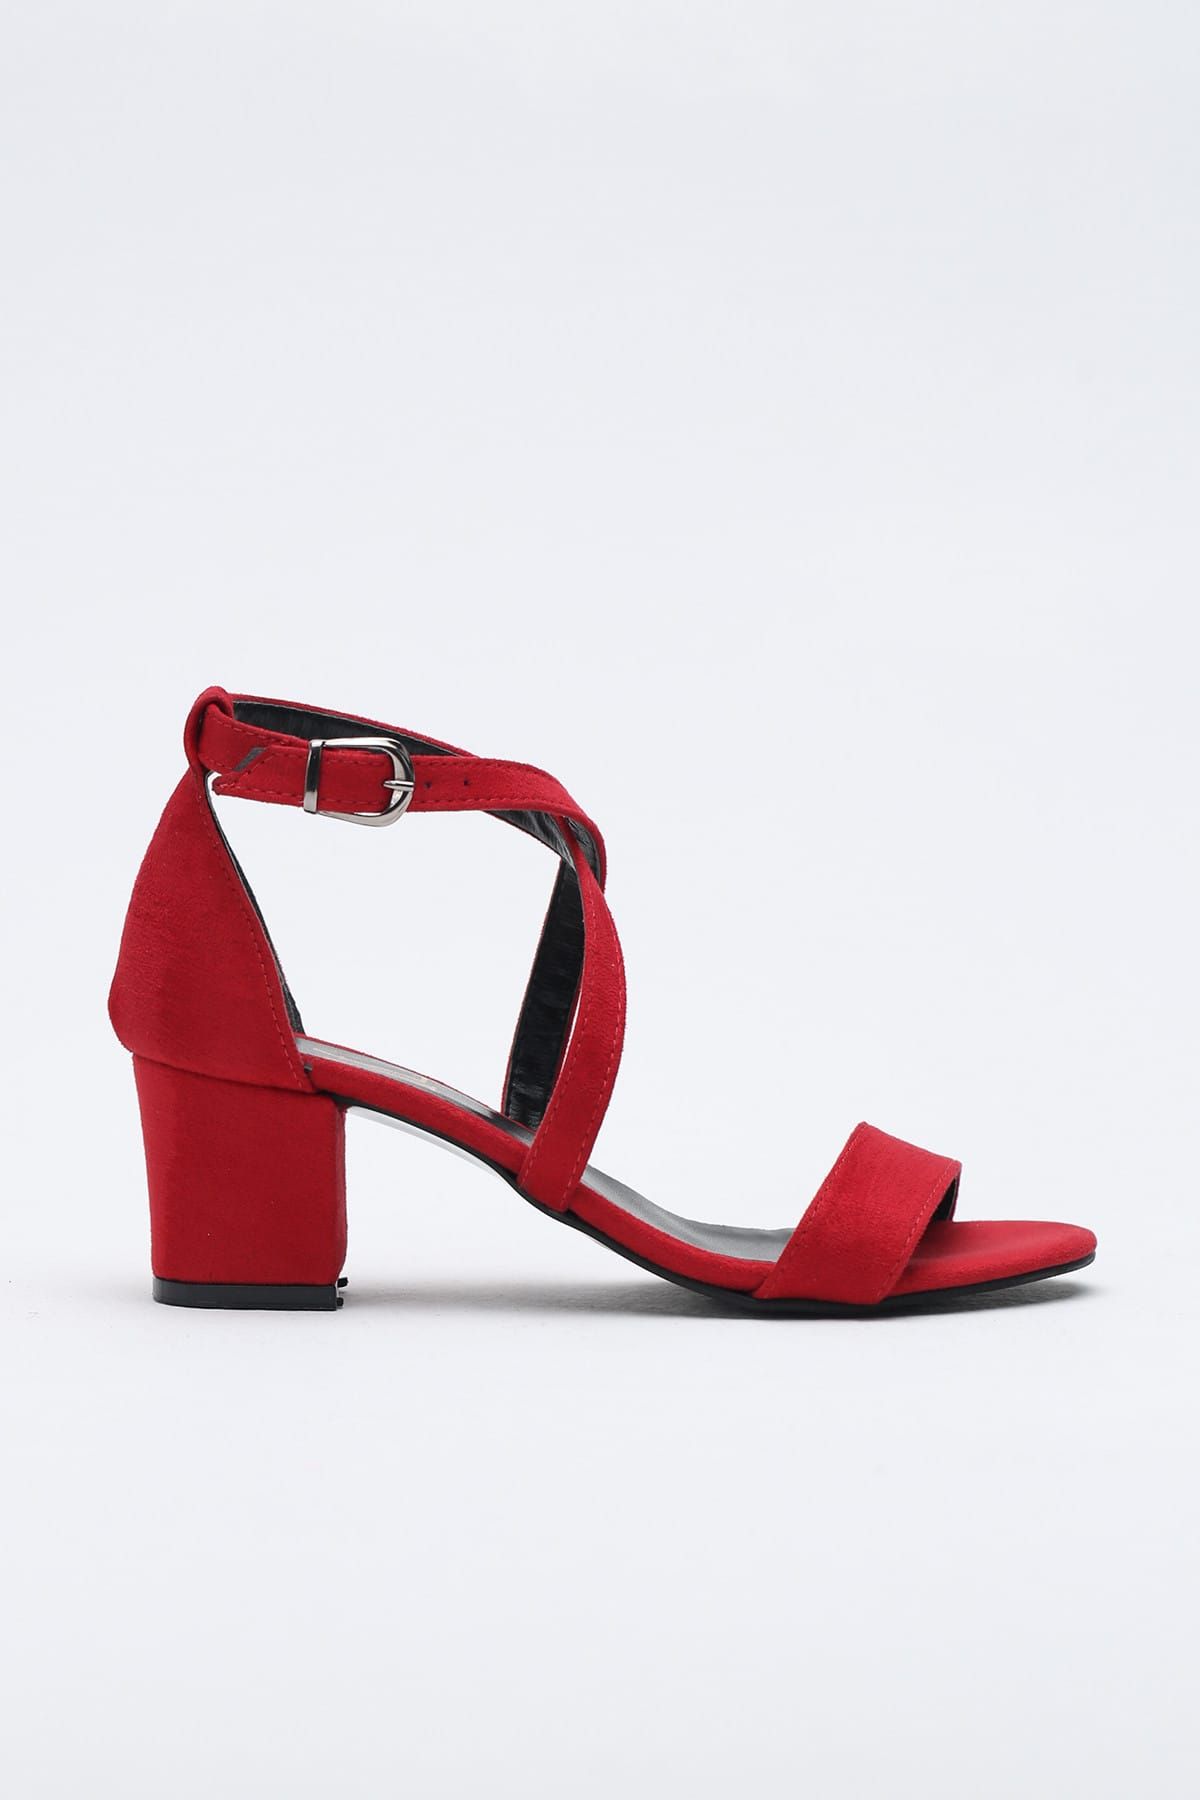 Ayakkabı Modası Kırmızı Süet Kadın Topuklu Ayakkabı BBF-1453-2-1